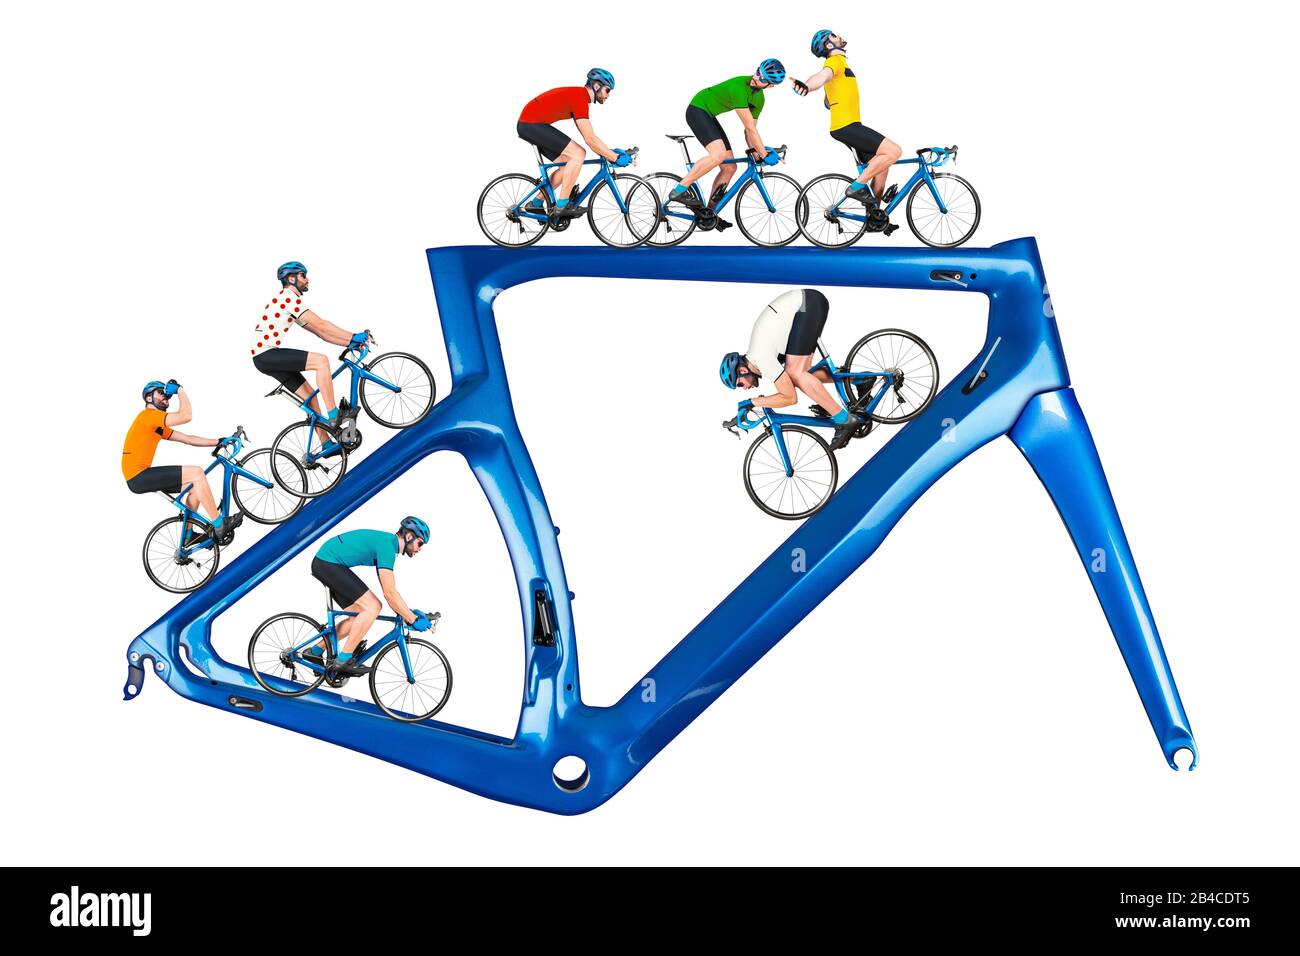 concetto di corsa su bicicletta. ciclista in maglia da competizione su bici da corsa su una moderna cornice blu in carbonio isolata su sfondo bianco Foto Stock